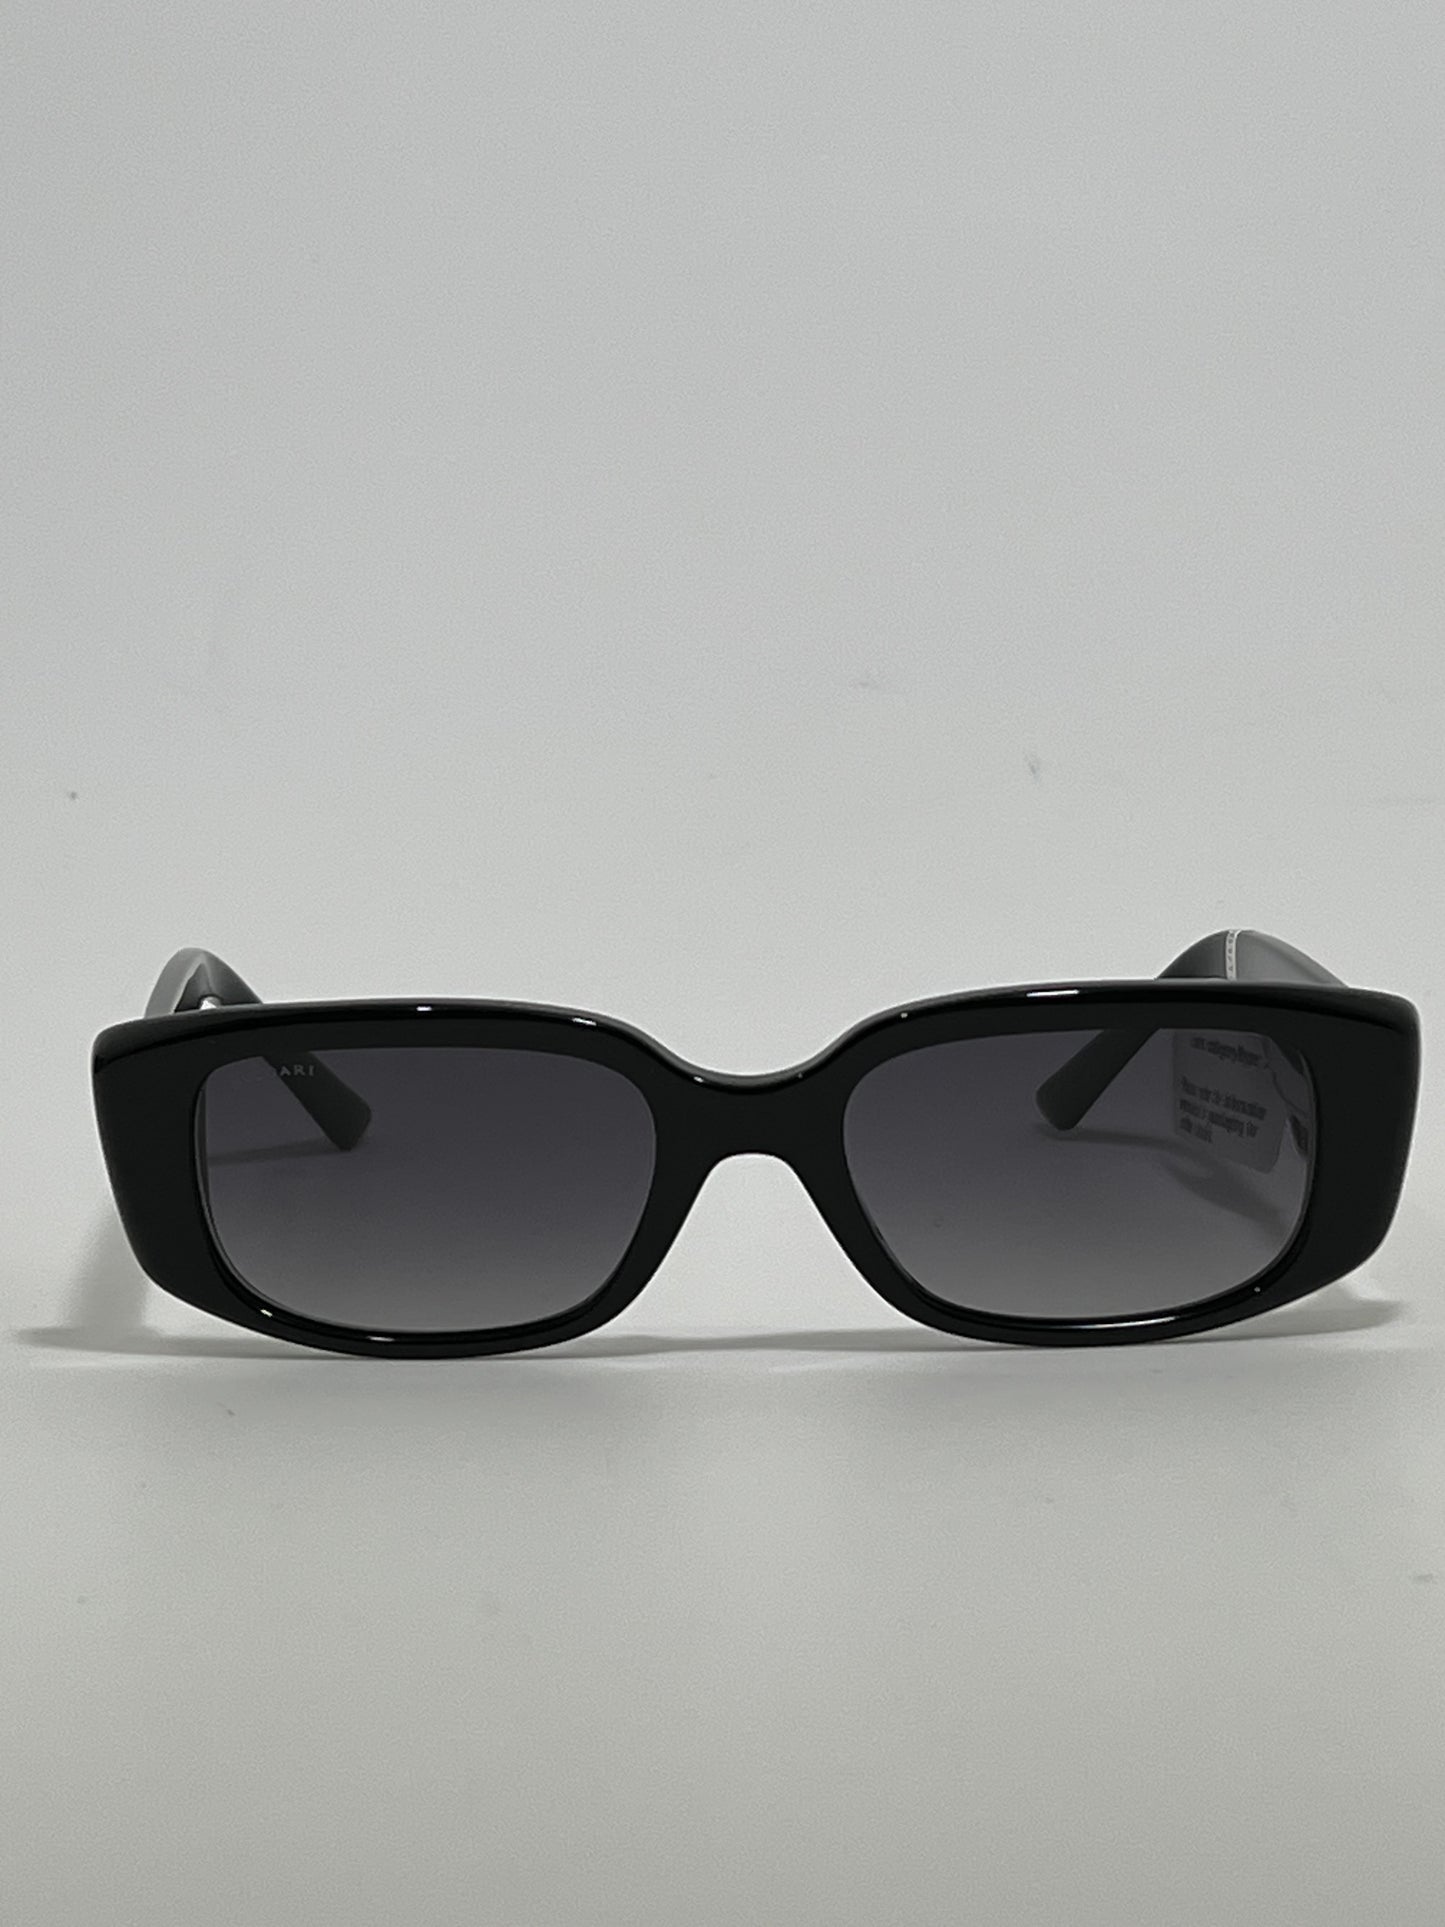 Bvlgari 8259 Cermic Sunglasses in Black